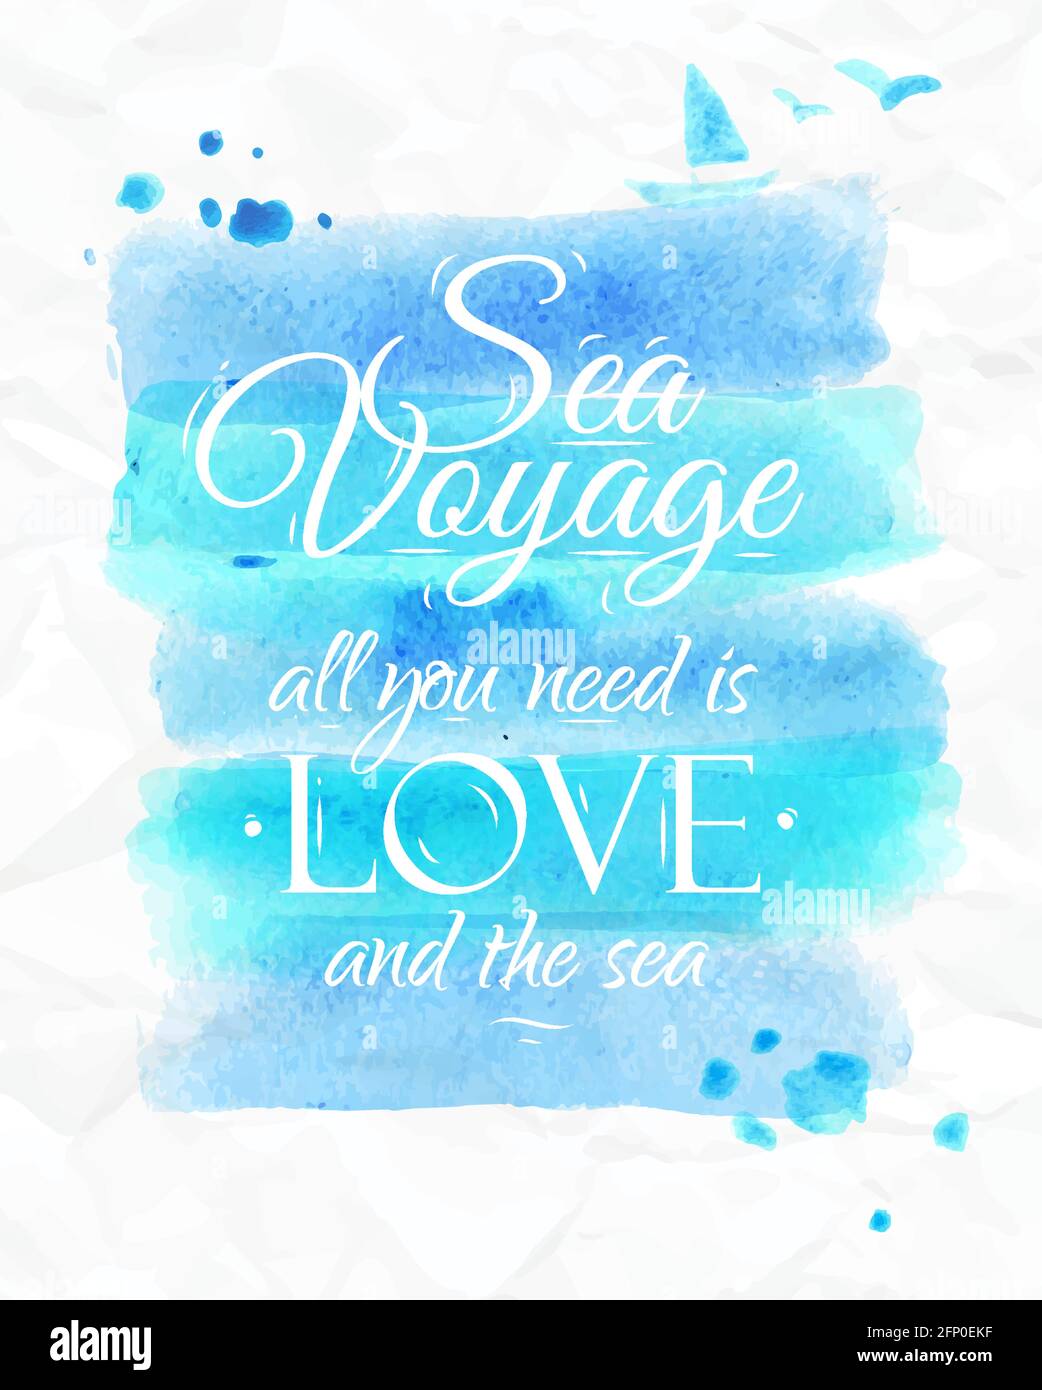 Affiche Watercolor de la mer en tons bleus sur le thème de la mer avec les mots Voyage de la mer tout ce dont vous avez besoin est l'amour et la mer. Illustration de Vecteur